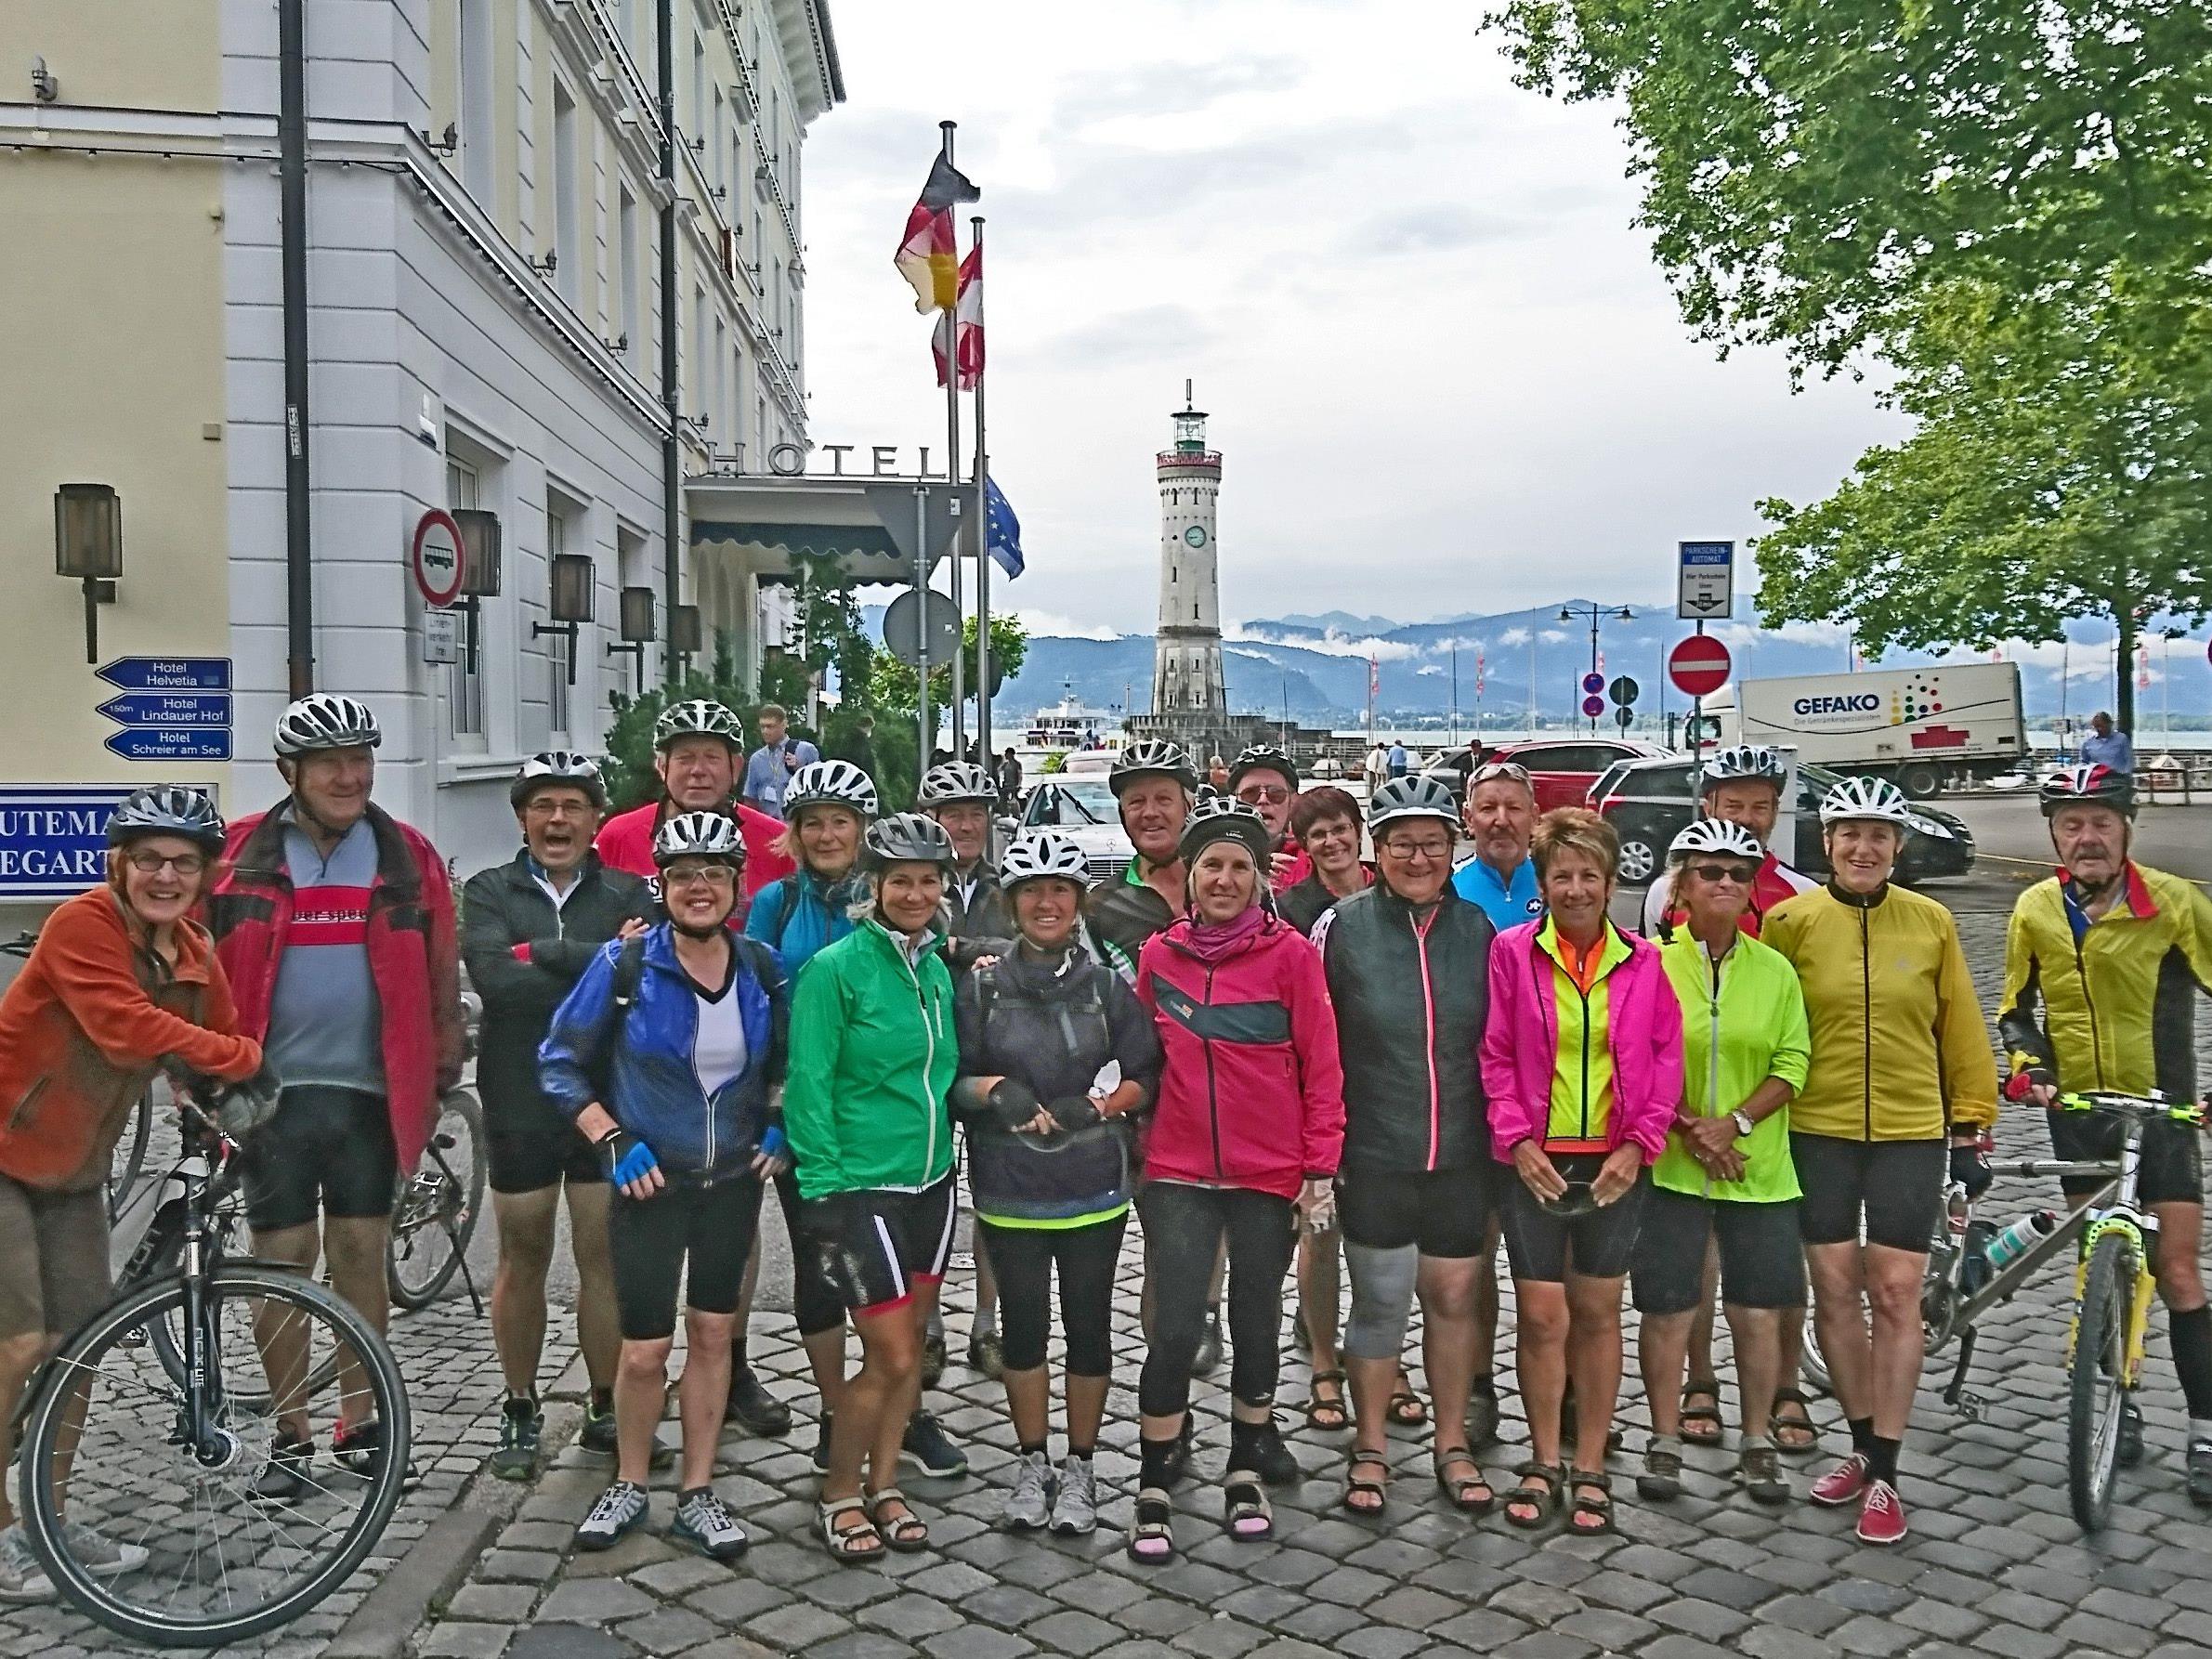 Radteam per pedales: Start in Lindau nach Biberach zu 4 herrlichen Radtagen